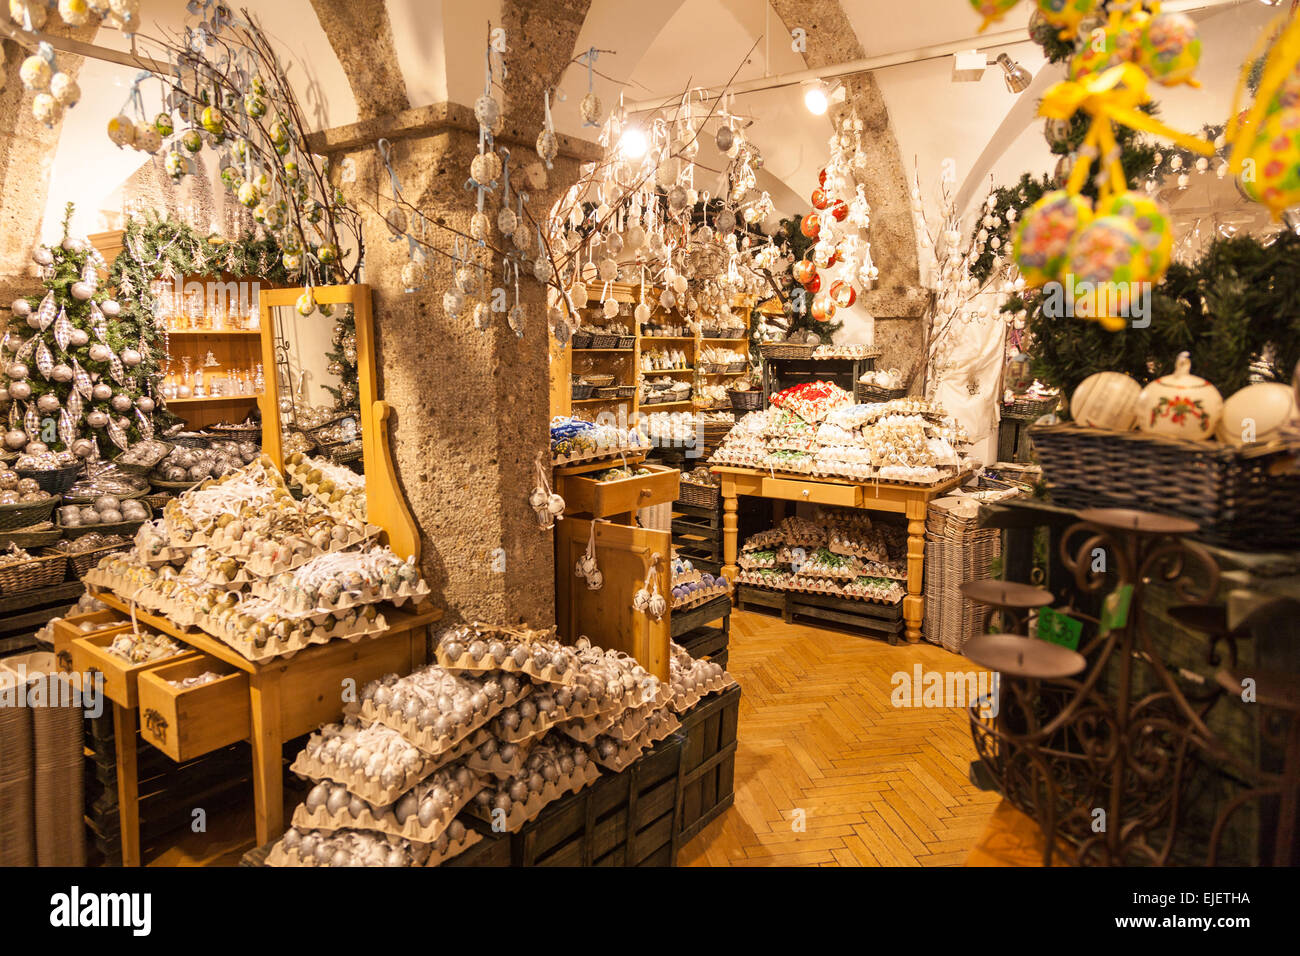 Una tienda en Salzburgo Austria vendiendo huevos decorados para decoraciones de navidad Foto de stock